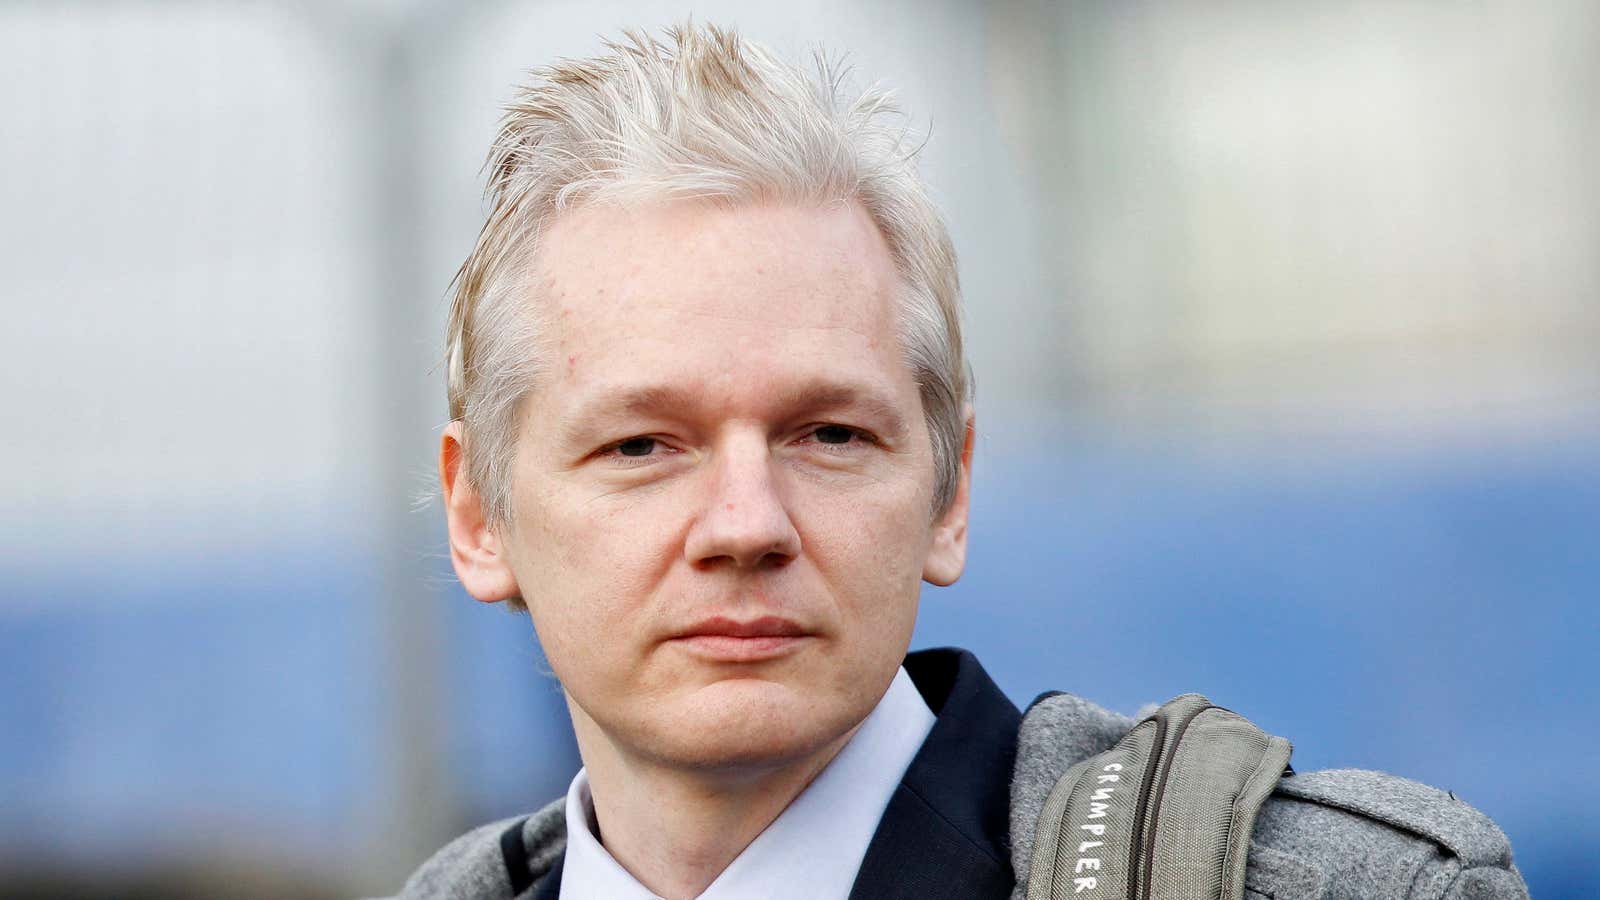 Julian Assange in 2011.